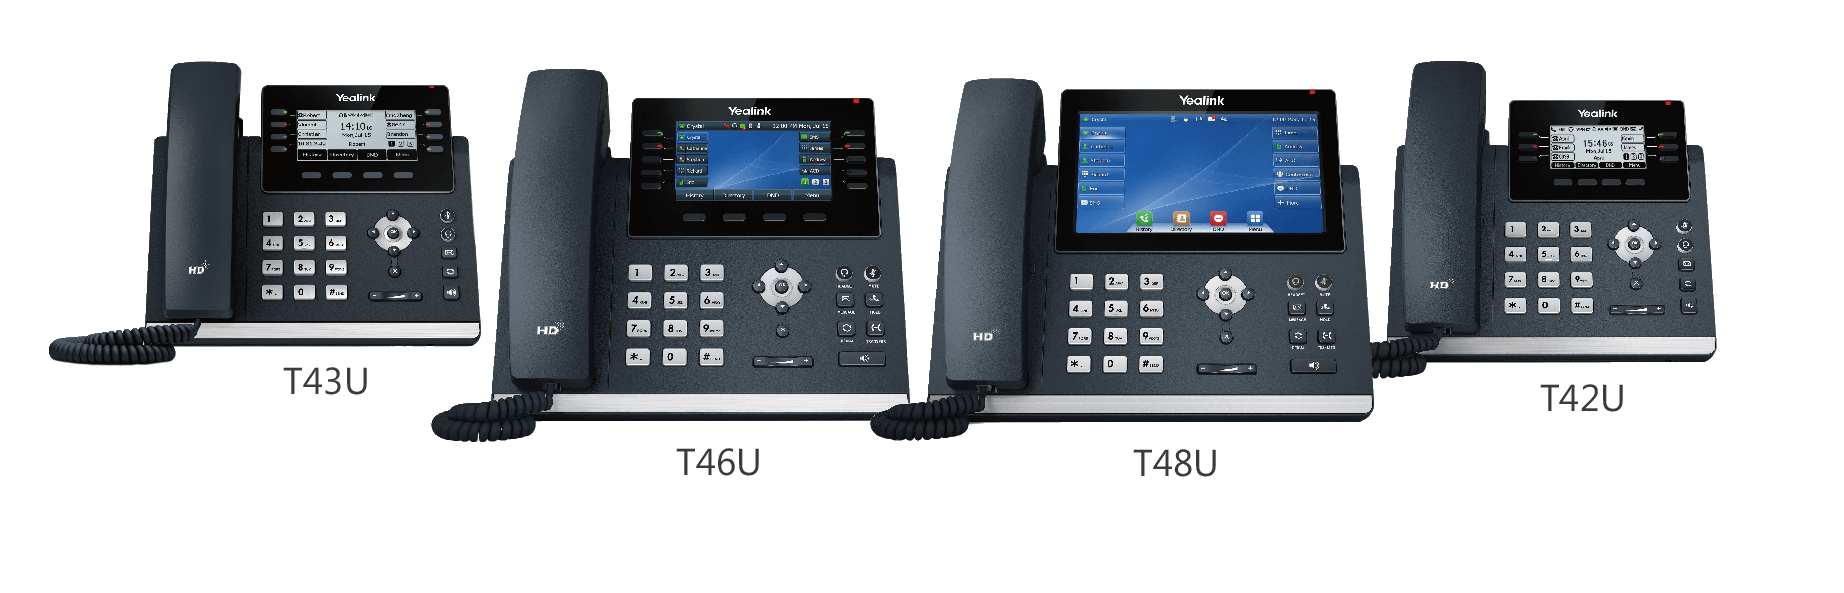 T4U系列IP电话